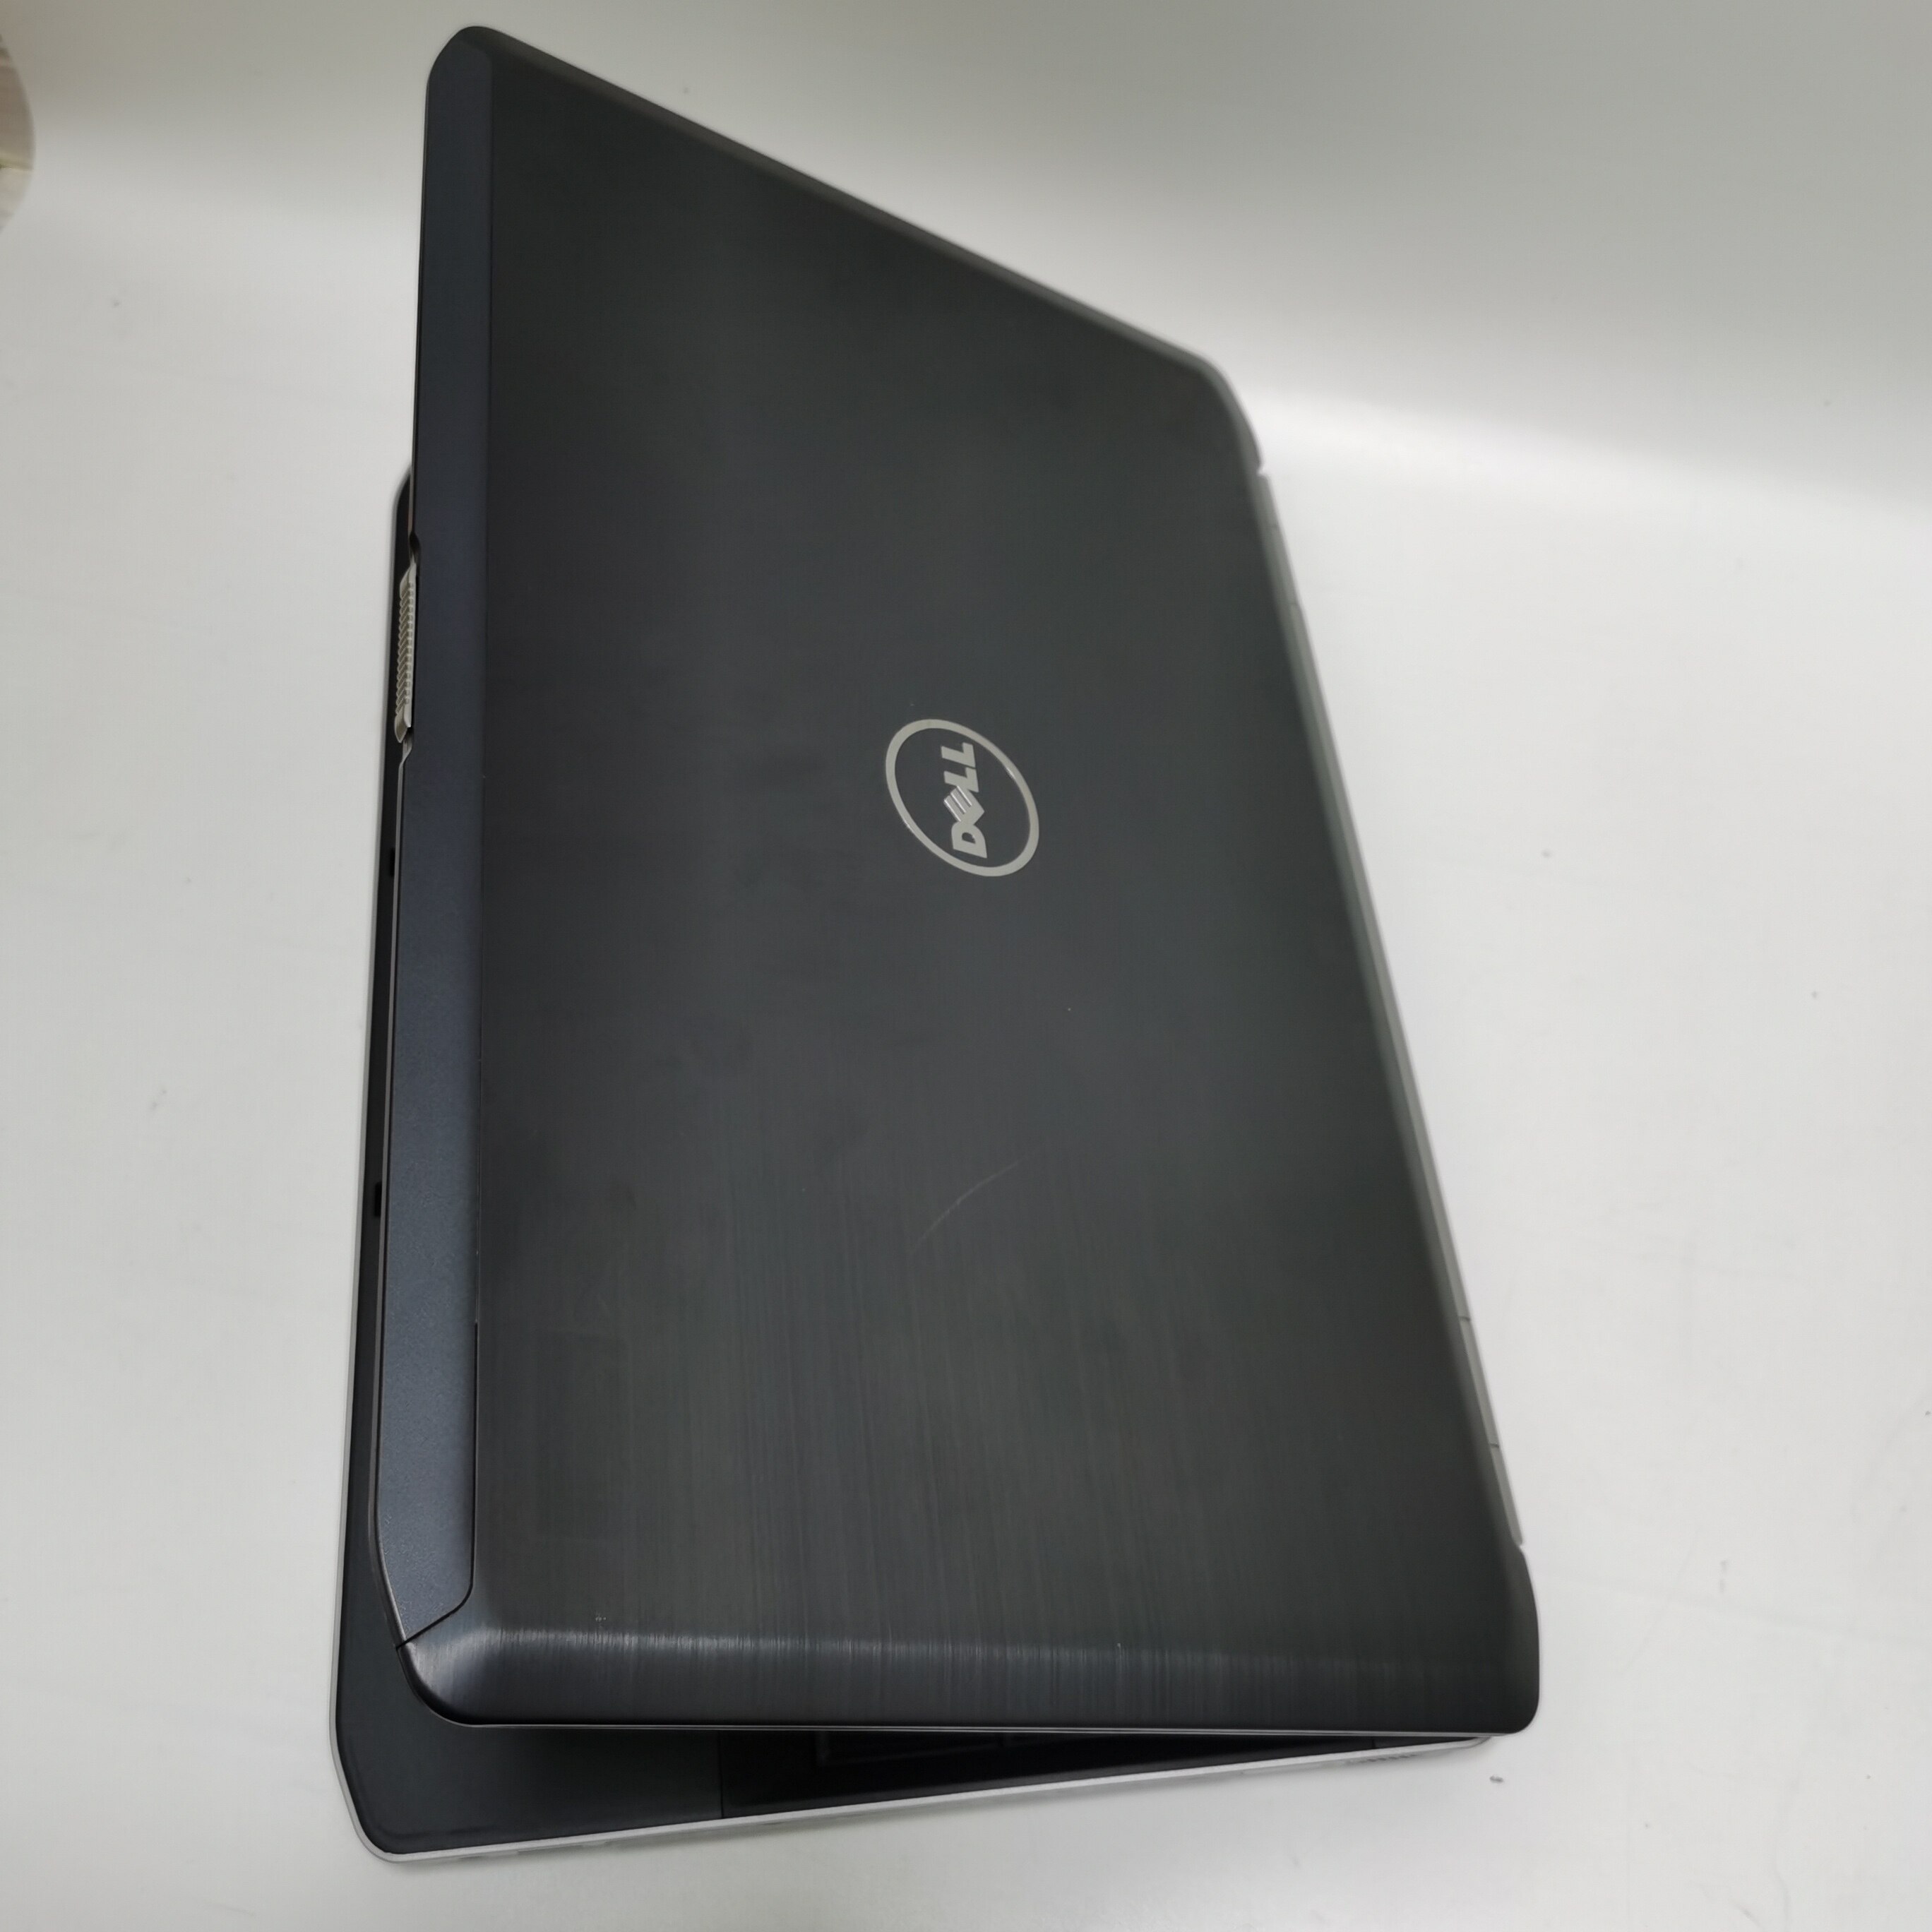 คำอธิบายเพิ่มเติมเกี่ยวกับ โน๊ตบุ๊ค notebook Dell E5530 i5 gen3 15.6 inch  //  Lenovo ThinkPad  M14 โน๊ตบุ๊คมือสอง  โน๊ตบุ๊คถูกๆๆ  คอมพิวเตอร์  คอม  laptop pc